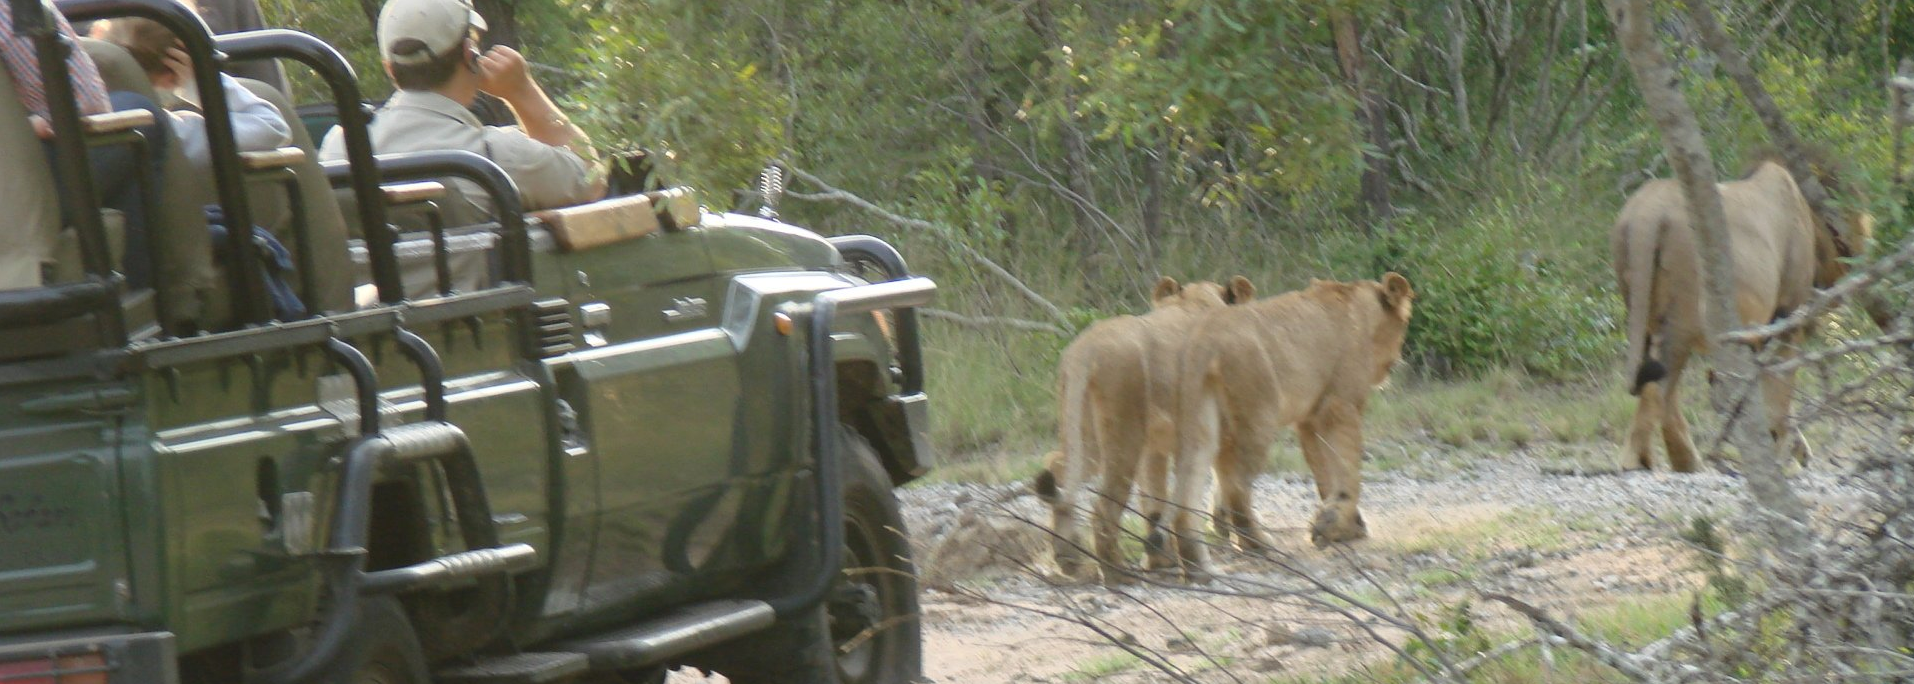 Big 5 on African Safari